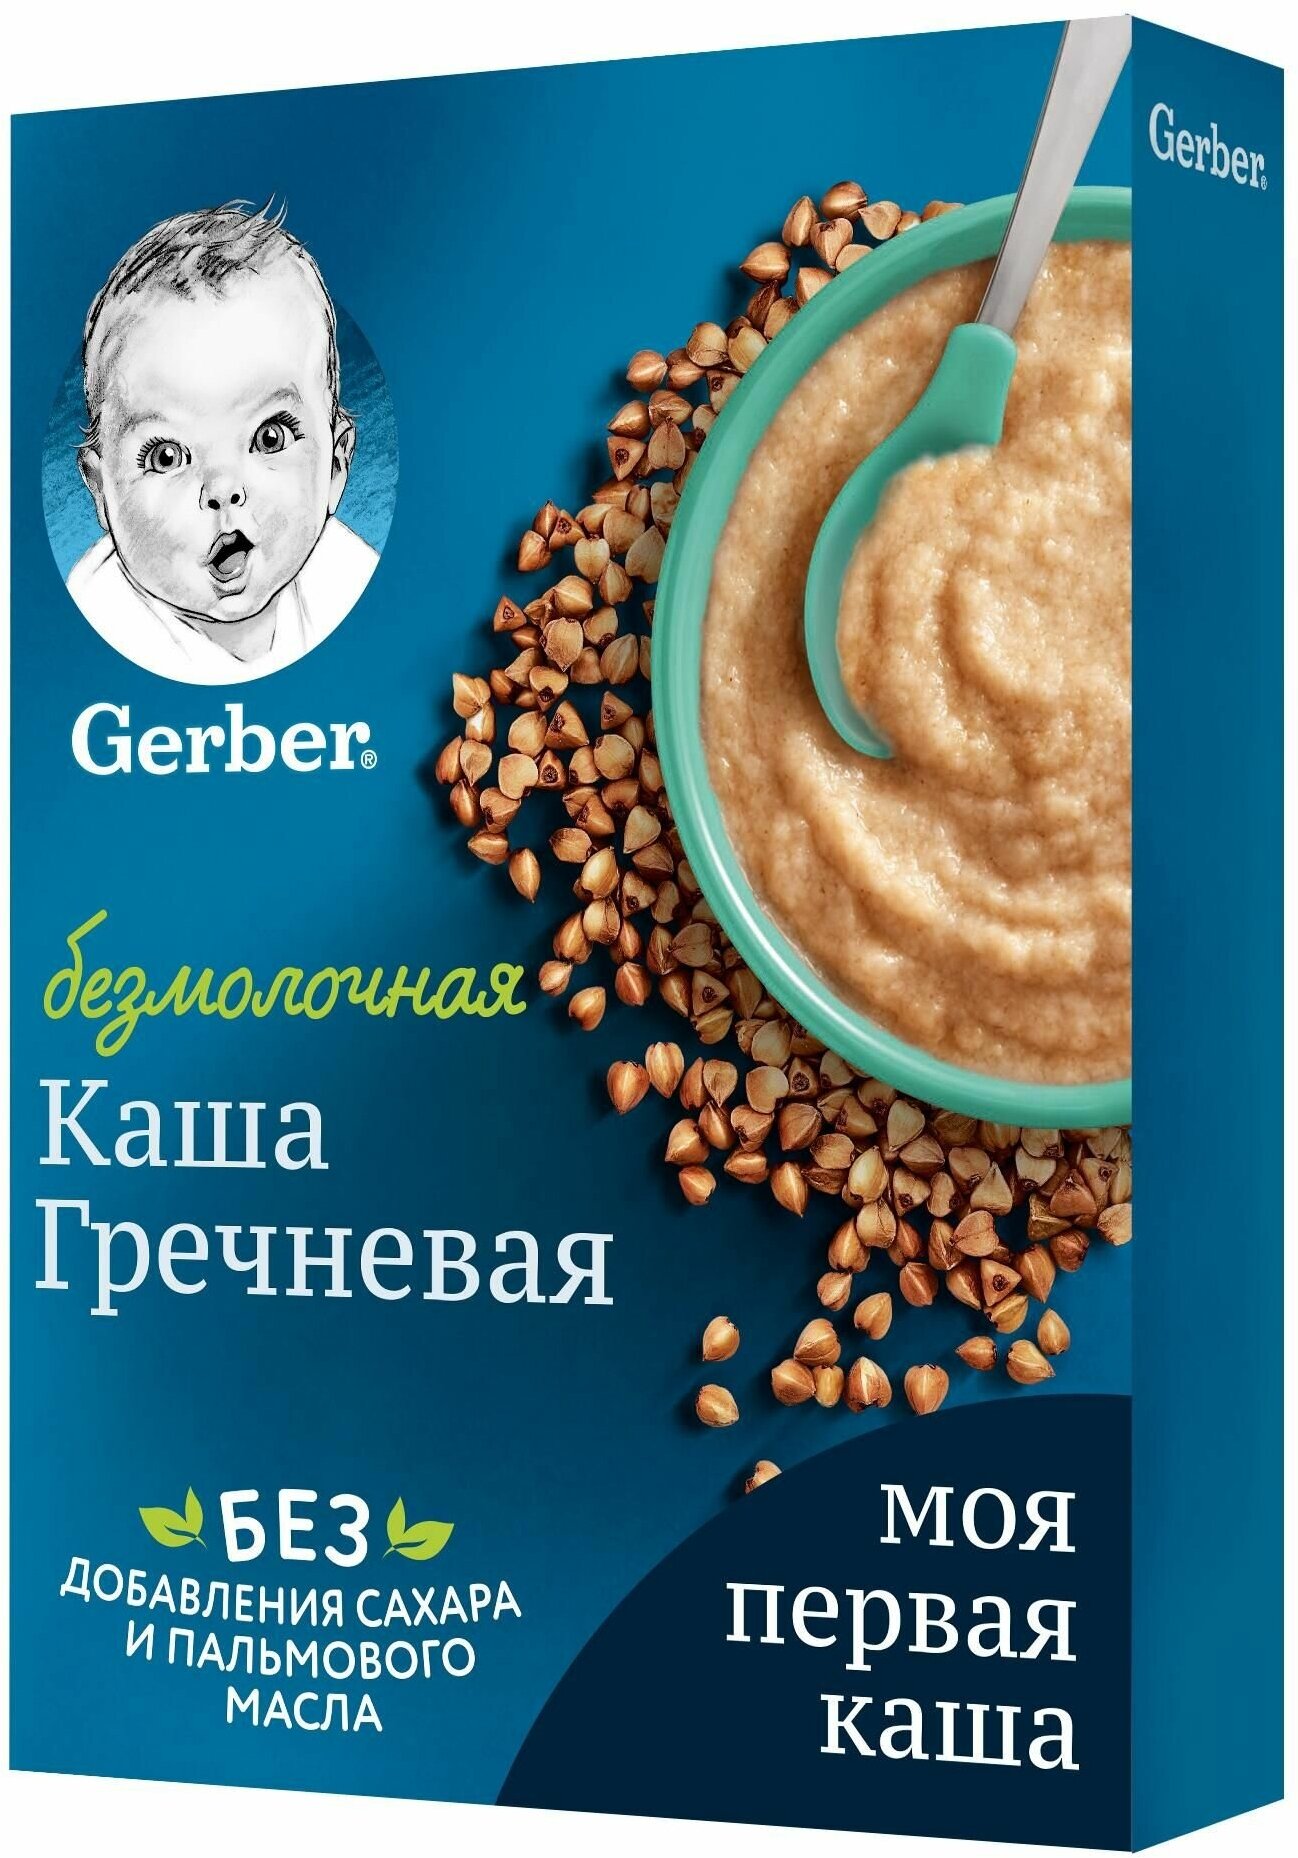 Gerber ® Безмолочная гречневая гипоаллергенная каша, 180гр - фото №7